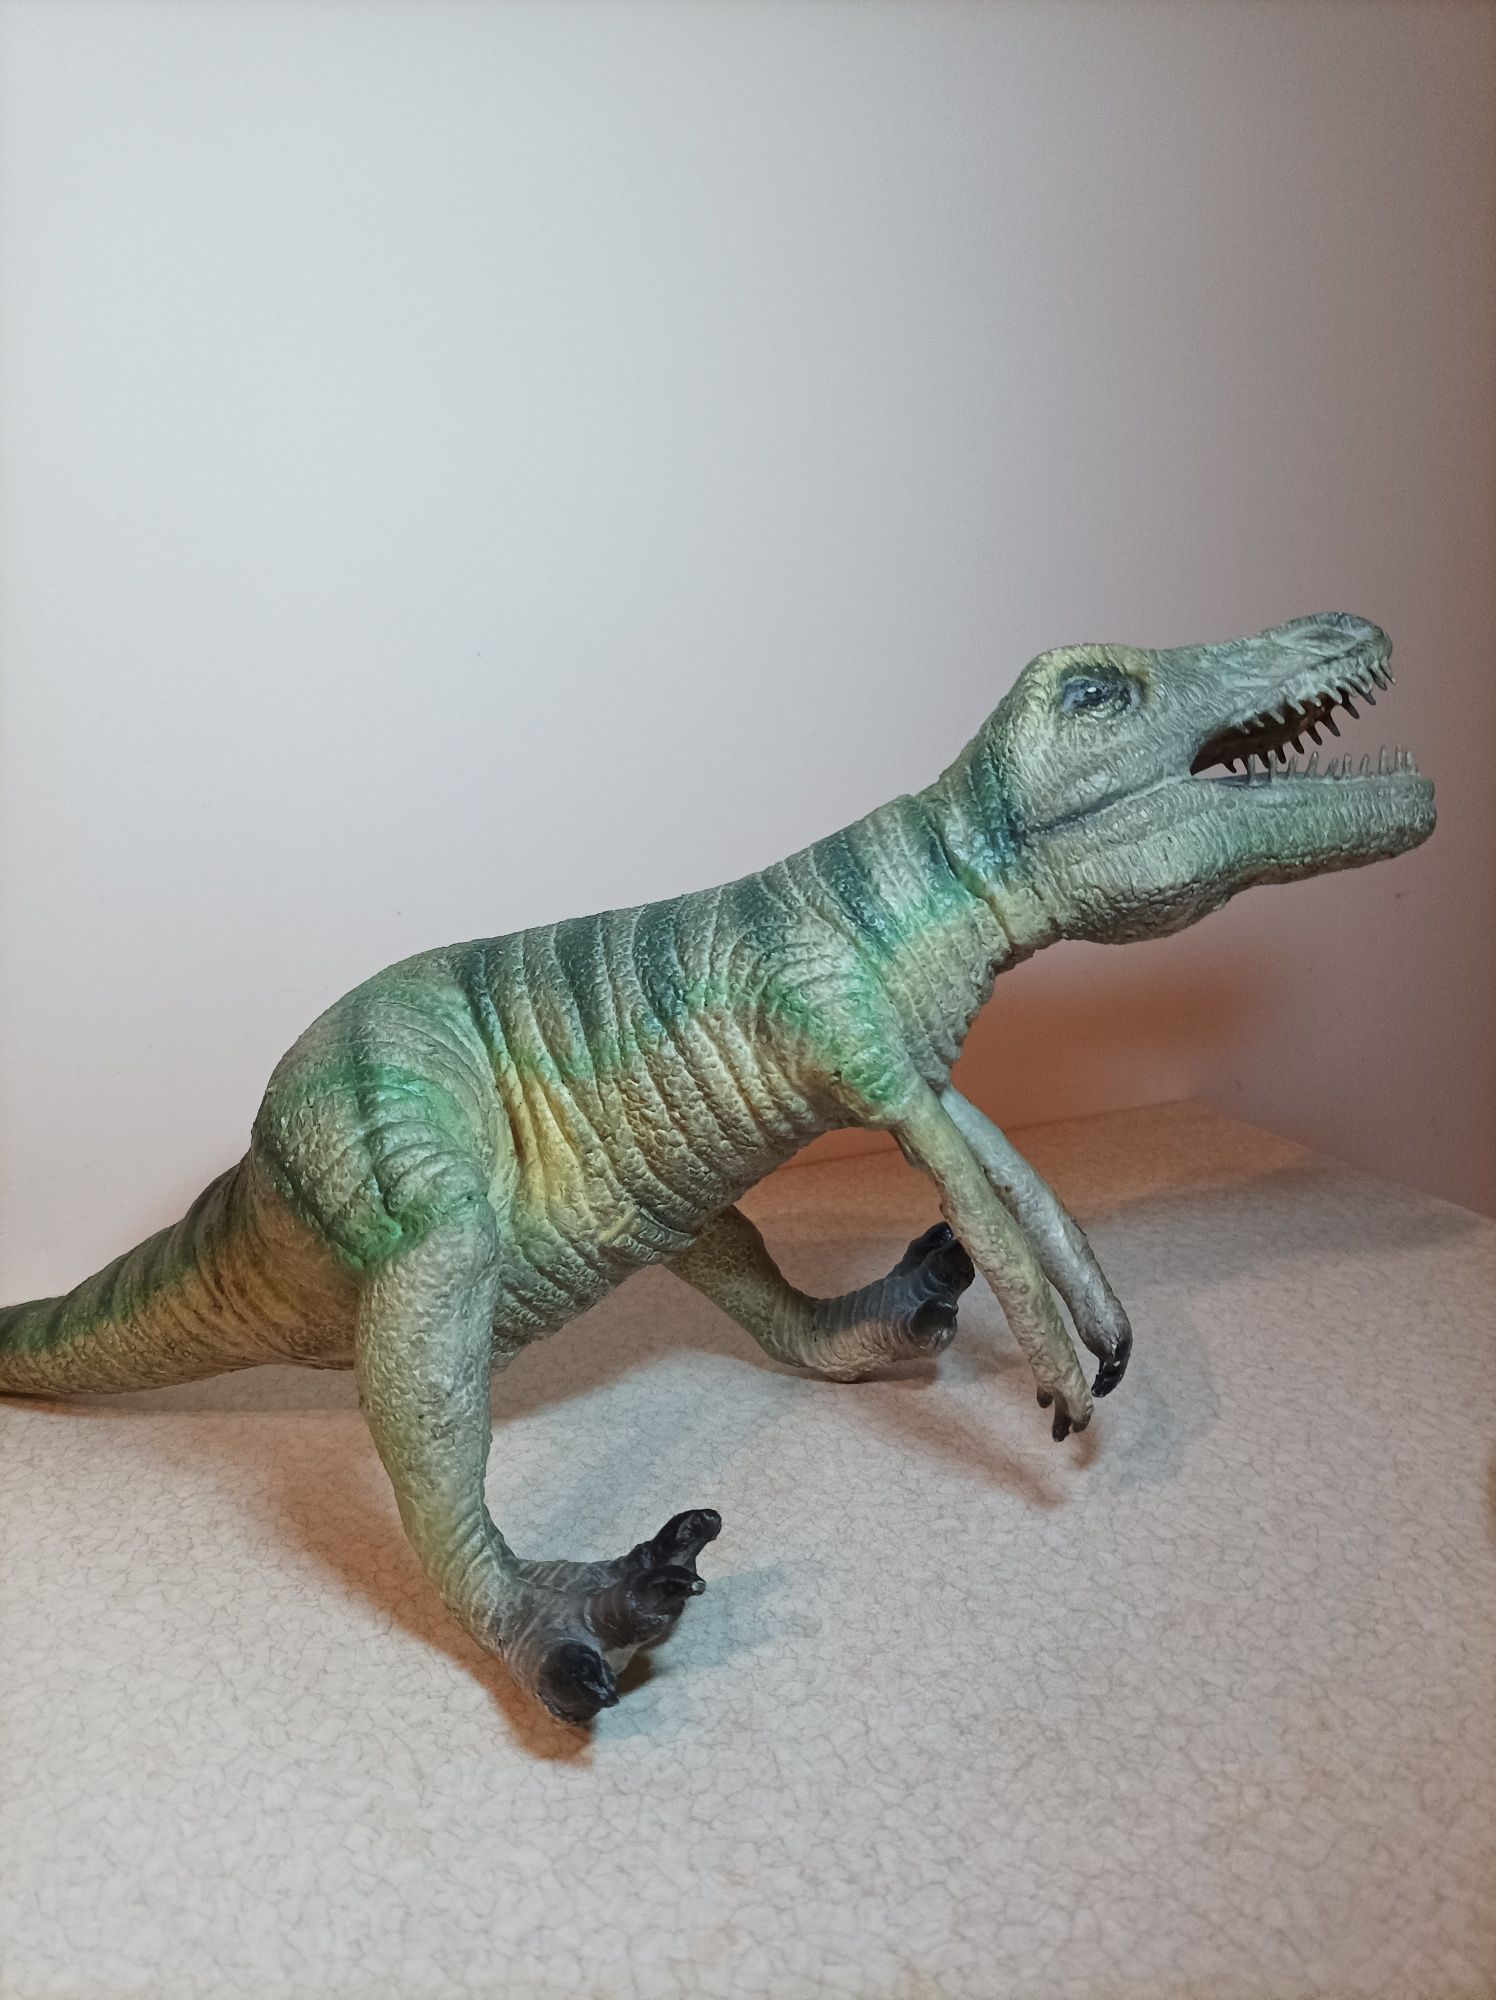 Dinozaur figurka